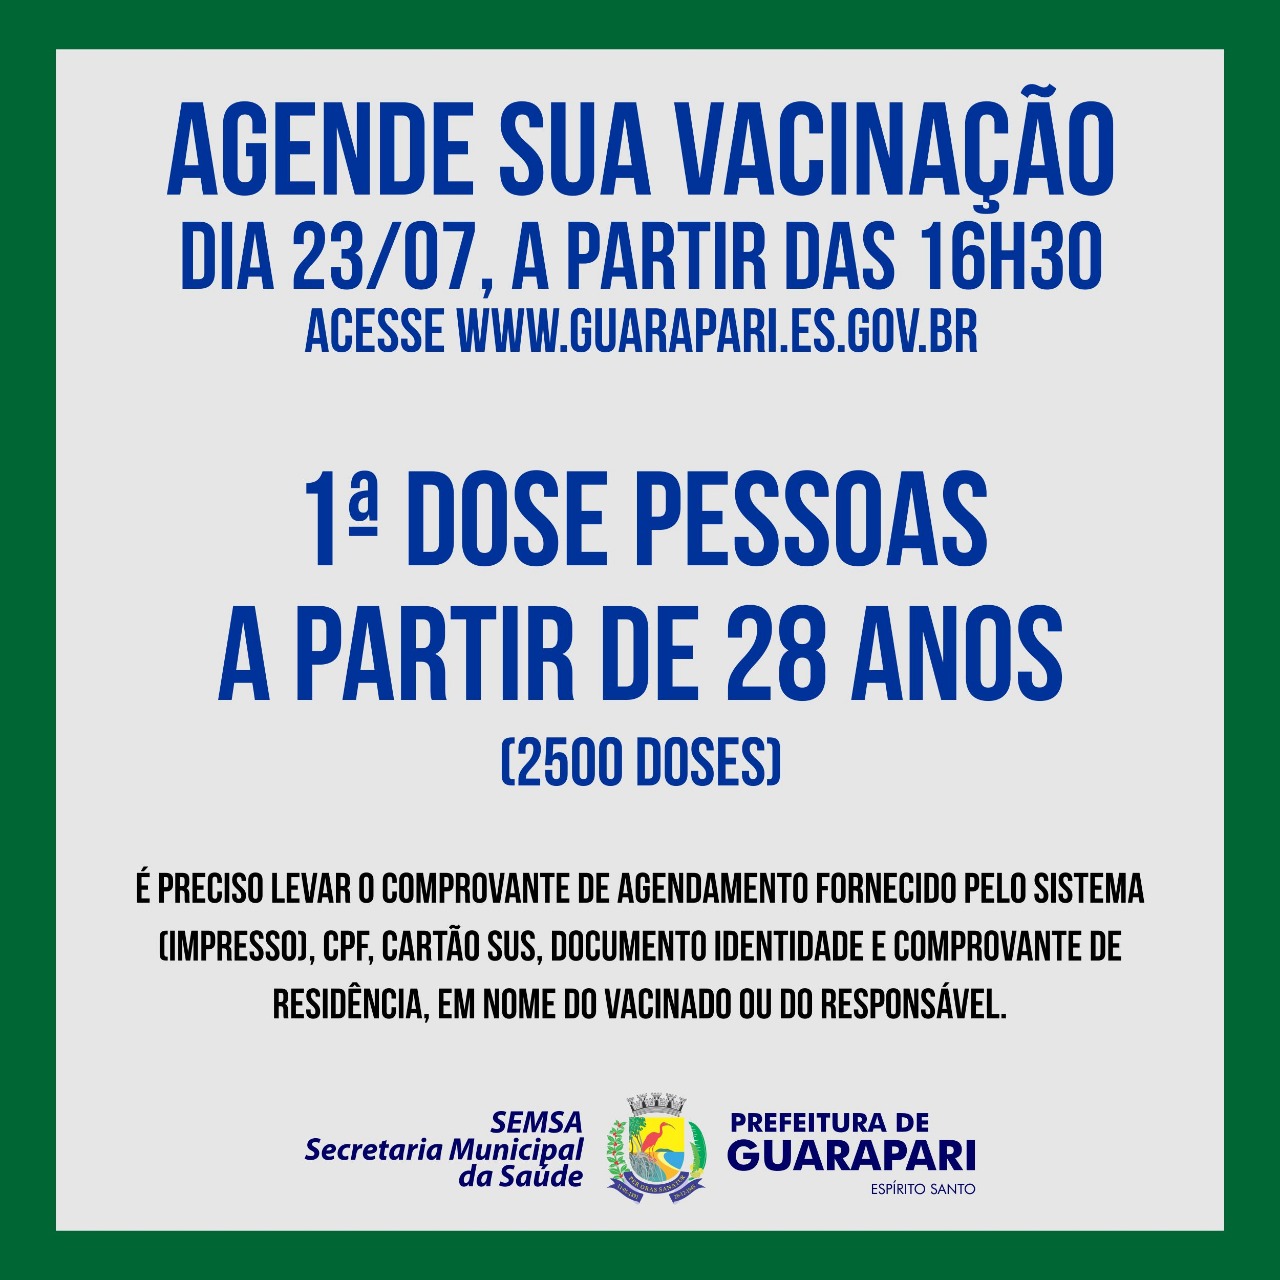 Vacinação Covid-19: Guarapari abre mais de 2 mil vagas de agendamento para pessoas acima de 28 anos